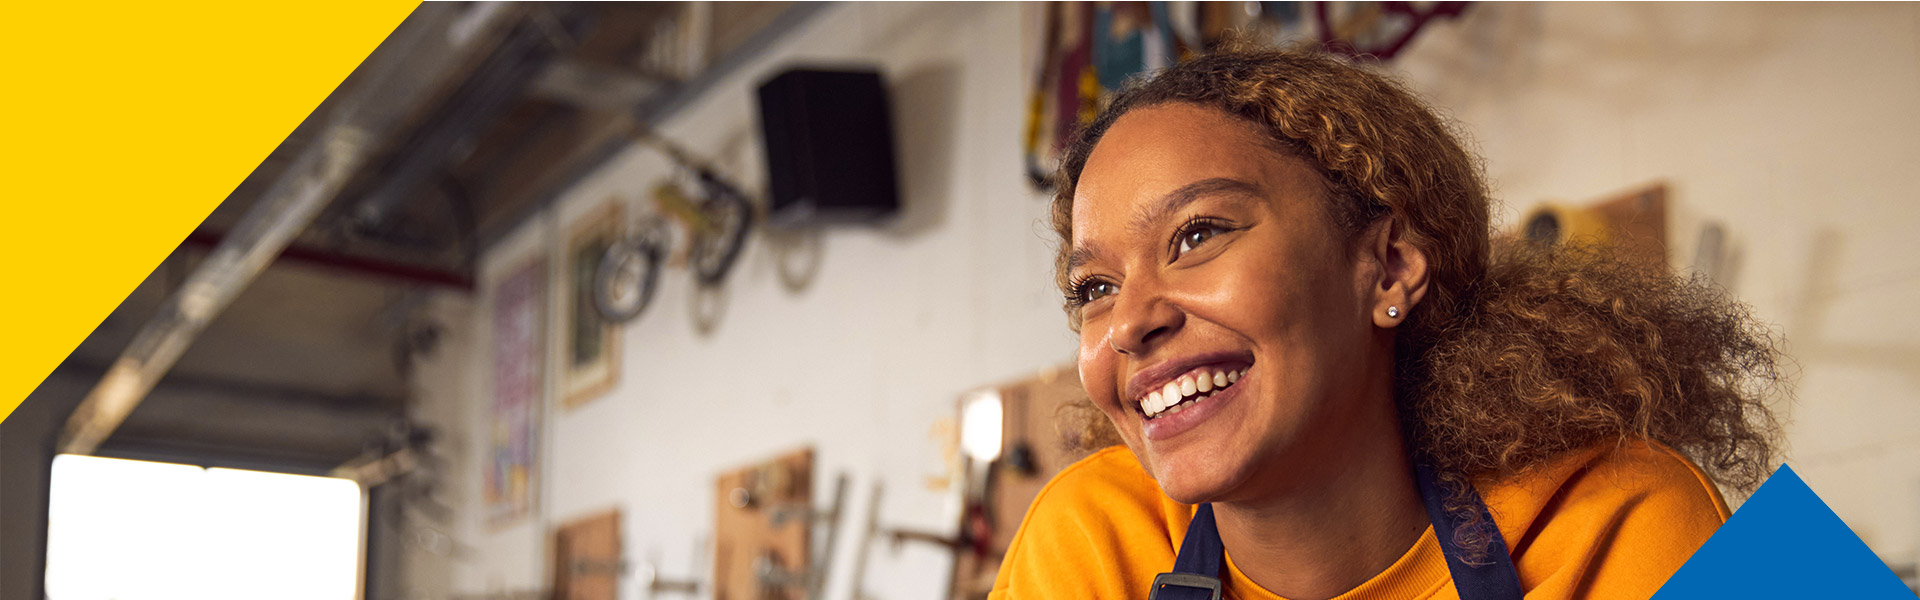 Mujer afroamericana sonriente en su sitio de trabajo gracias a las oportunidades de empleo Colsubsidio.